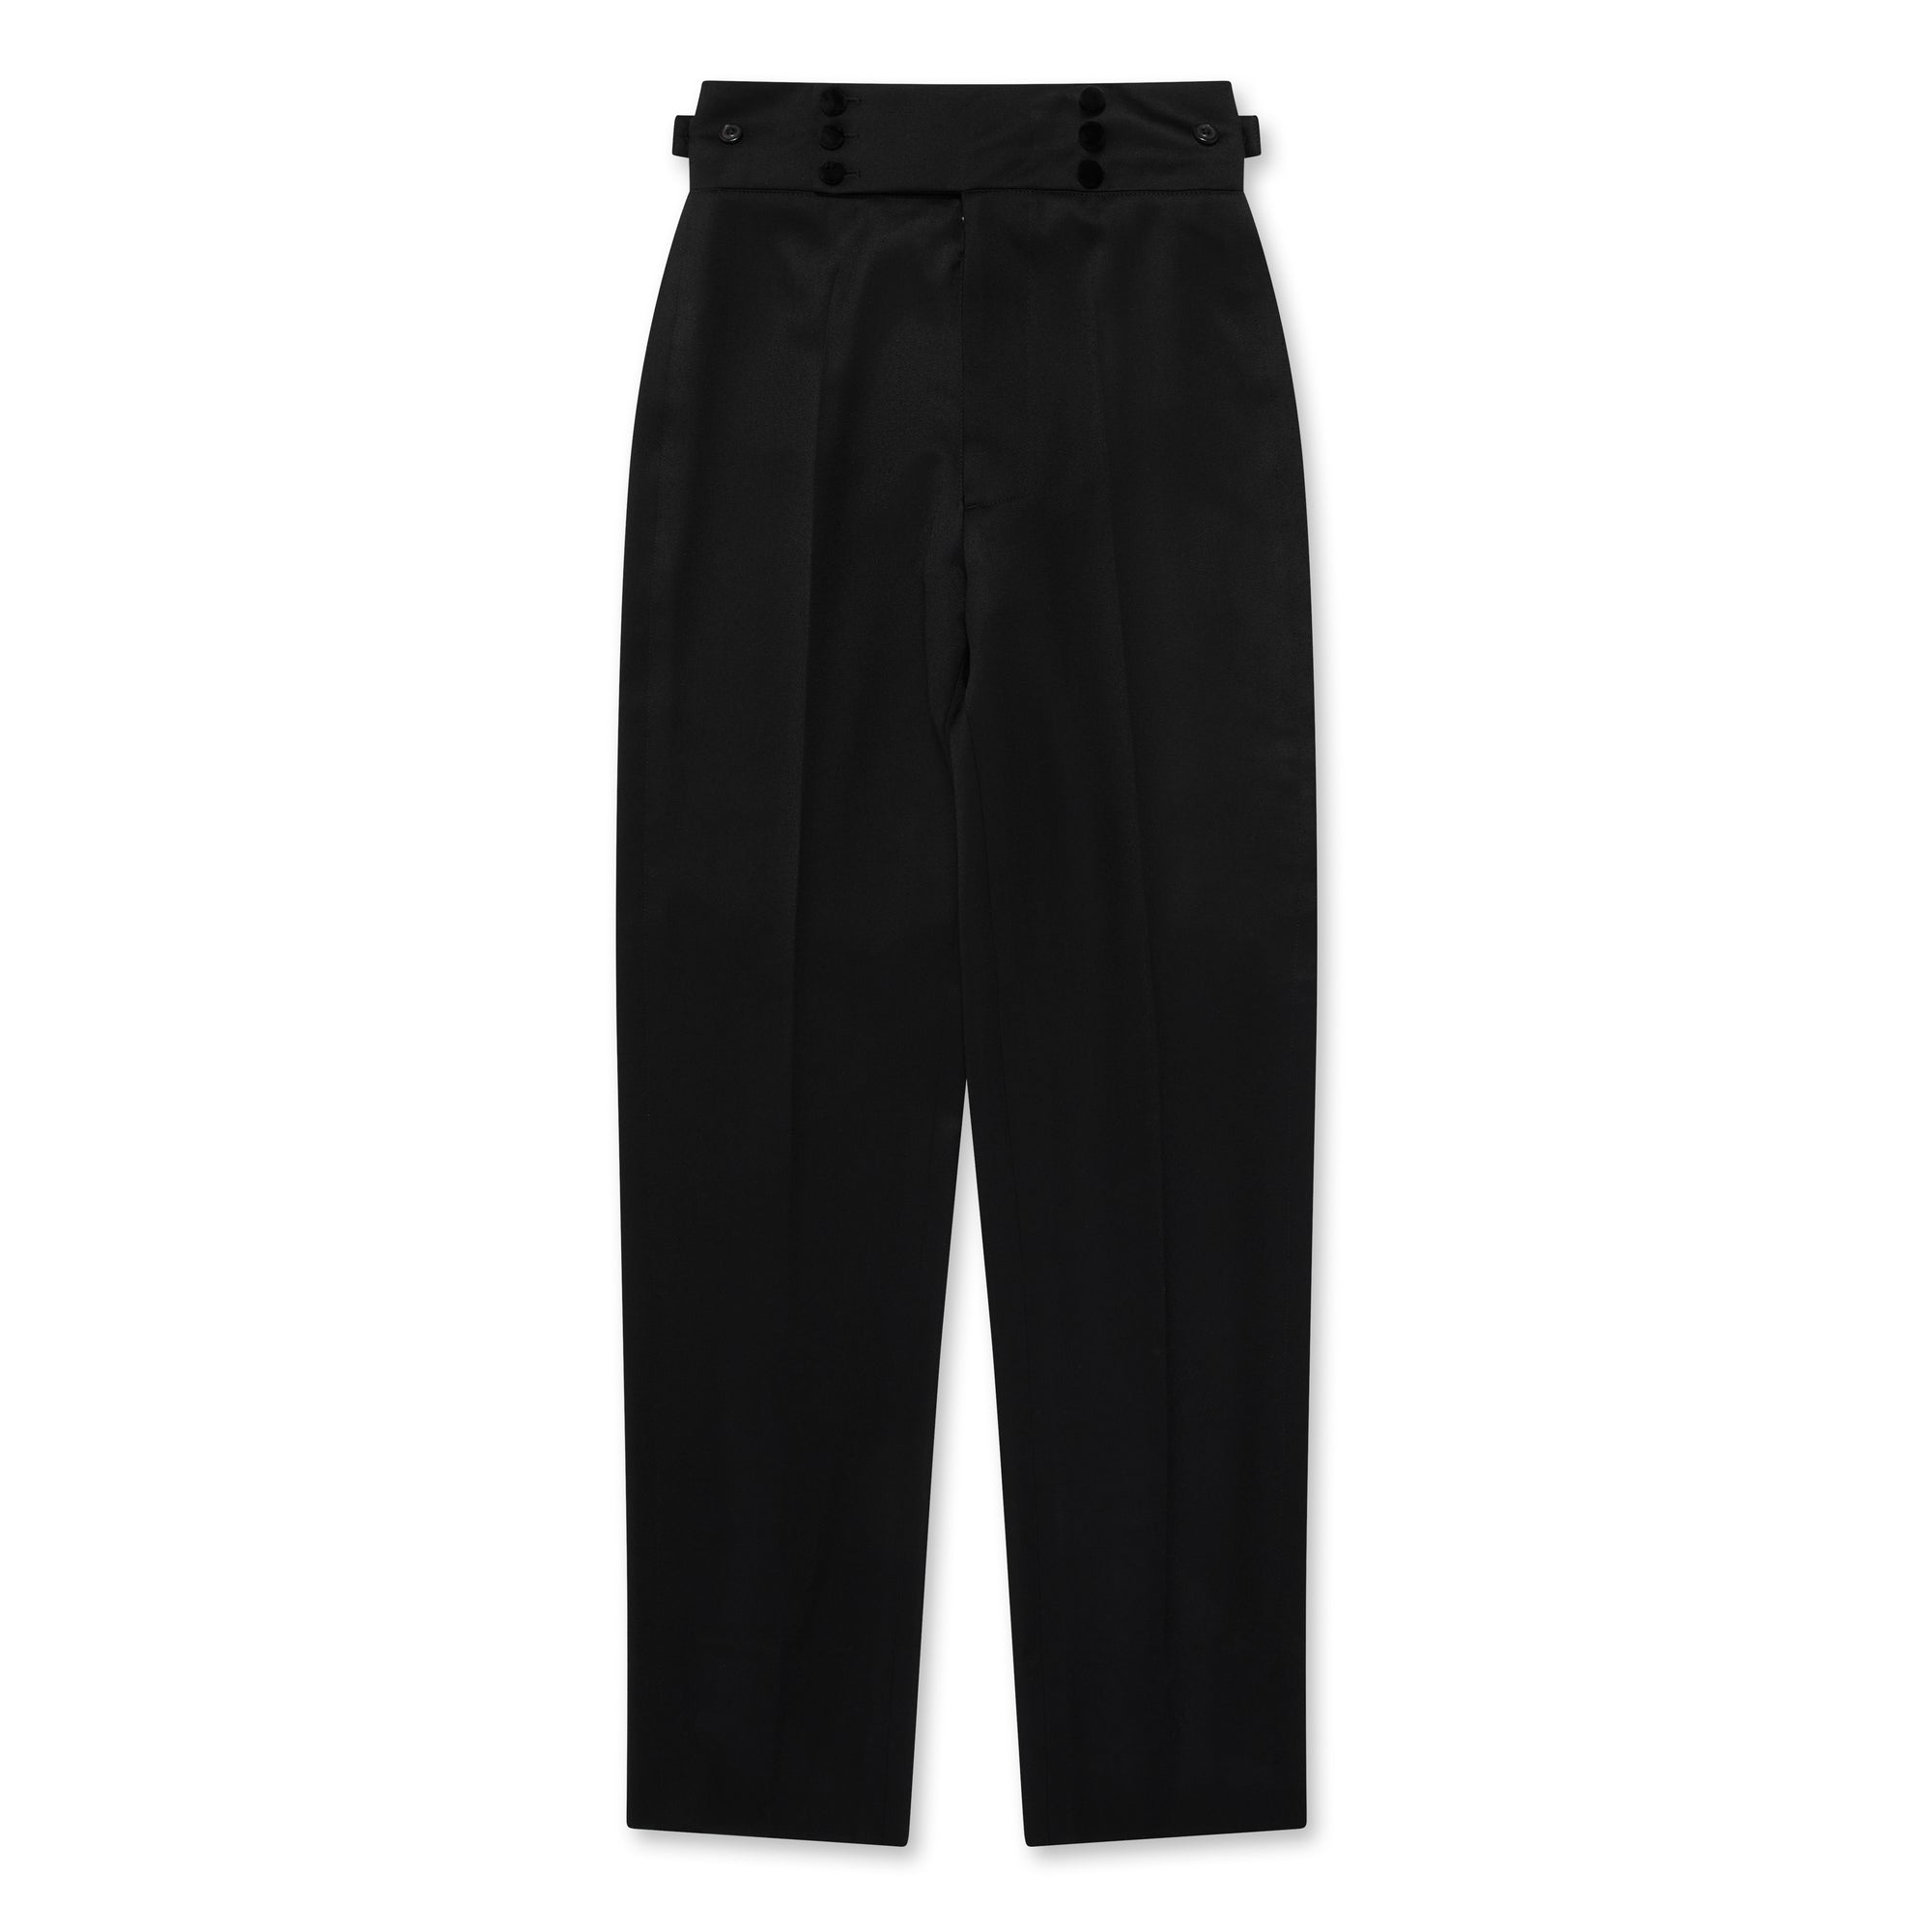 Maison Margiela - Women’s Wool Pleated Trousers - (Black) view 5